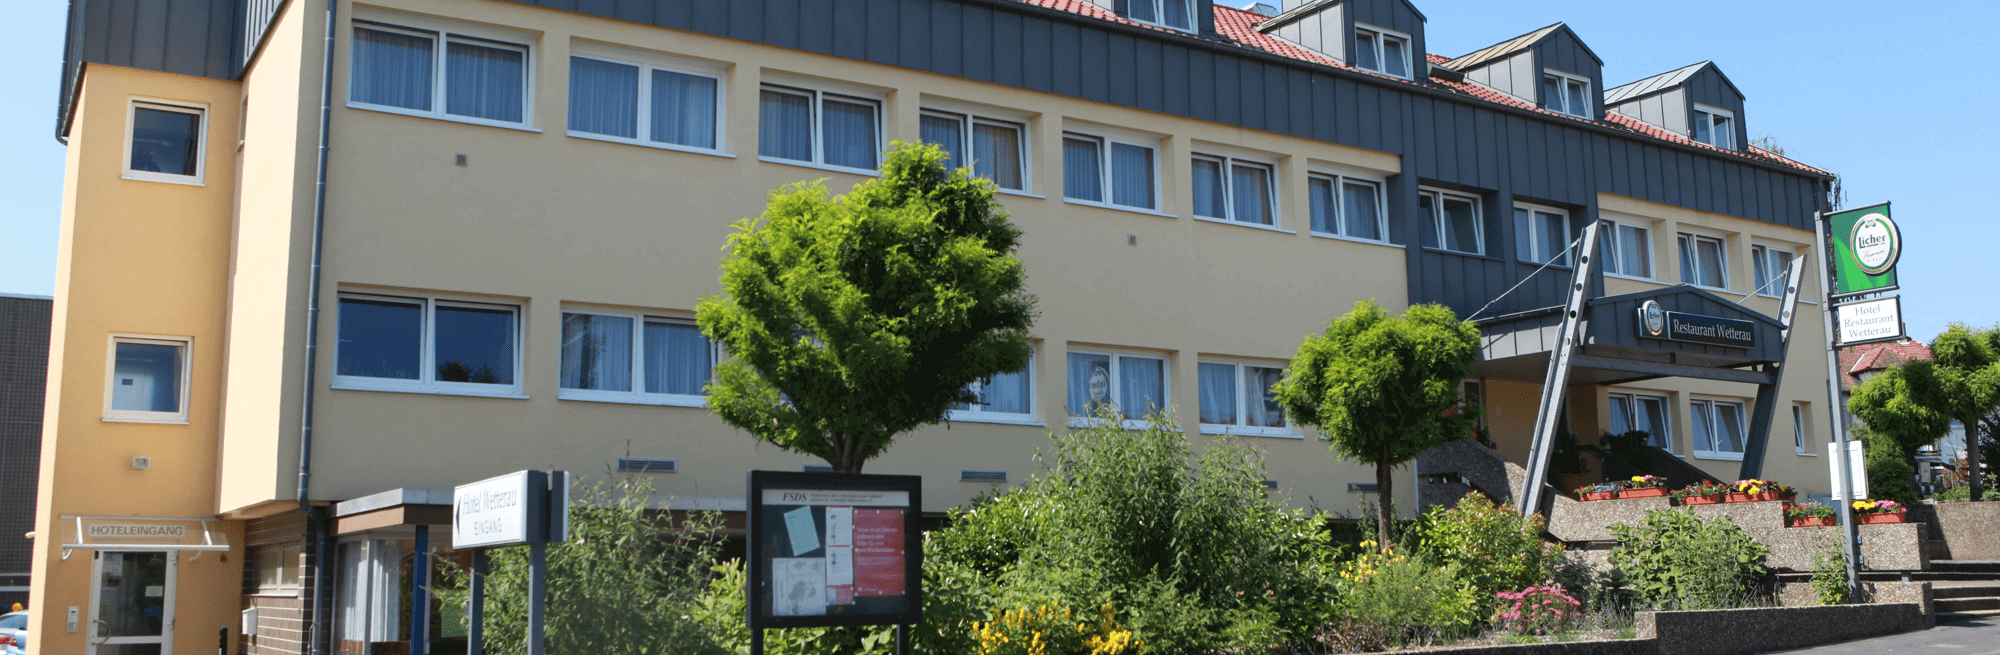 Hotel & Restaurant Wetterau in Wölfersheim bei Hungen